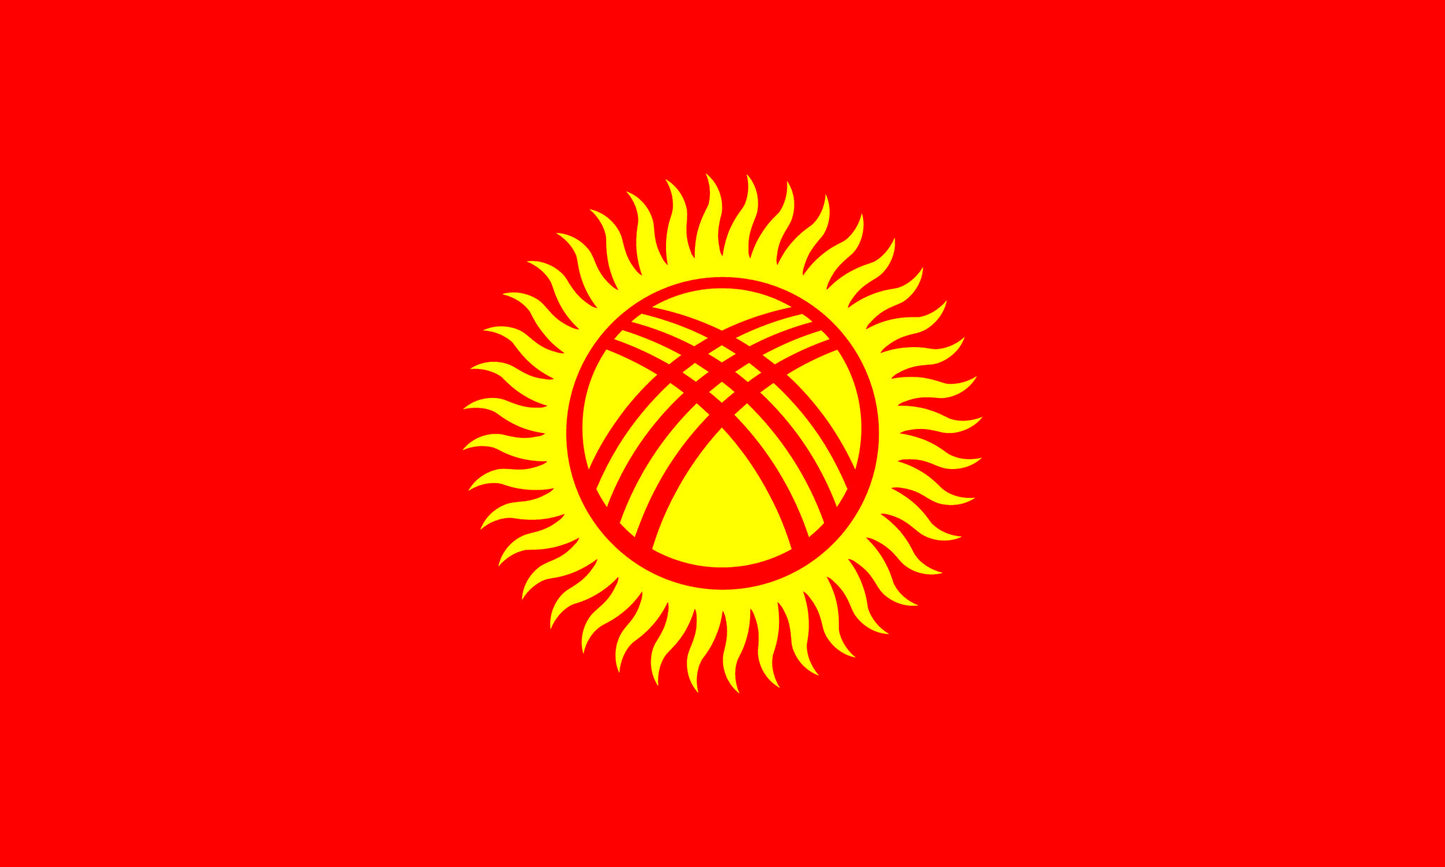 INR-KYR-15-22-2 - государственный флаг Республики Кыргызстан, размер: 15х22 см, материал: атлас. Печать с двух сторон. Подставка и шток приобретаются отдельно